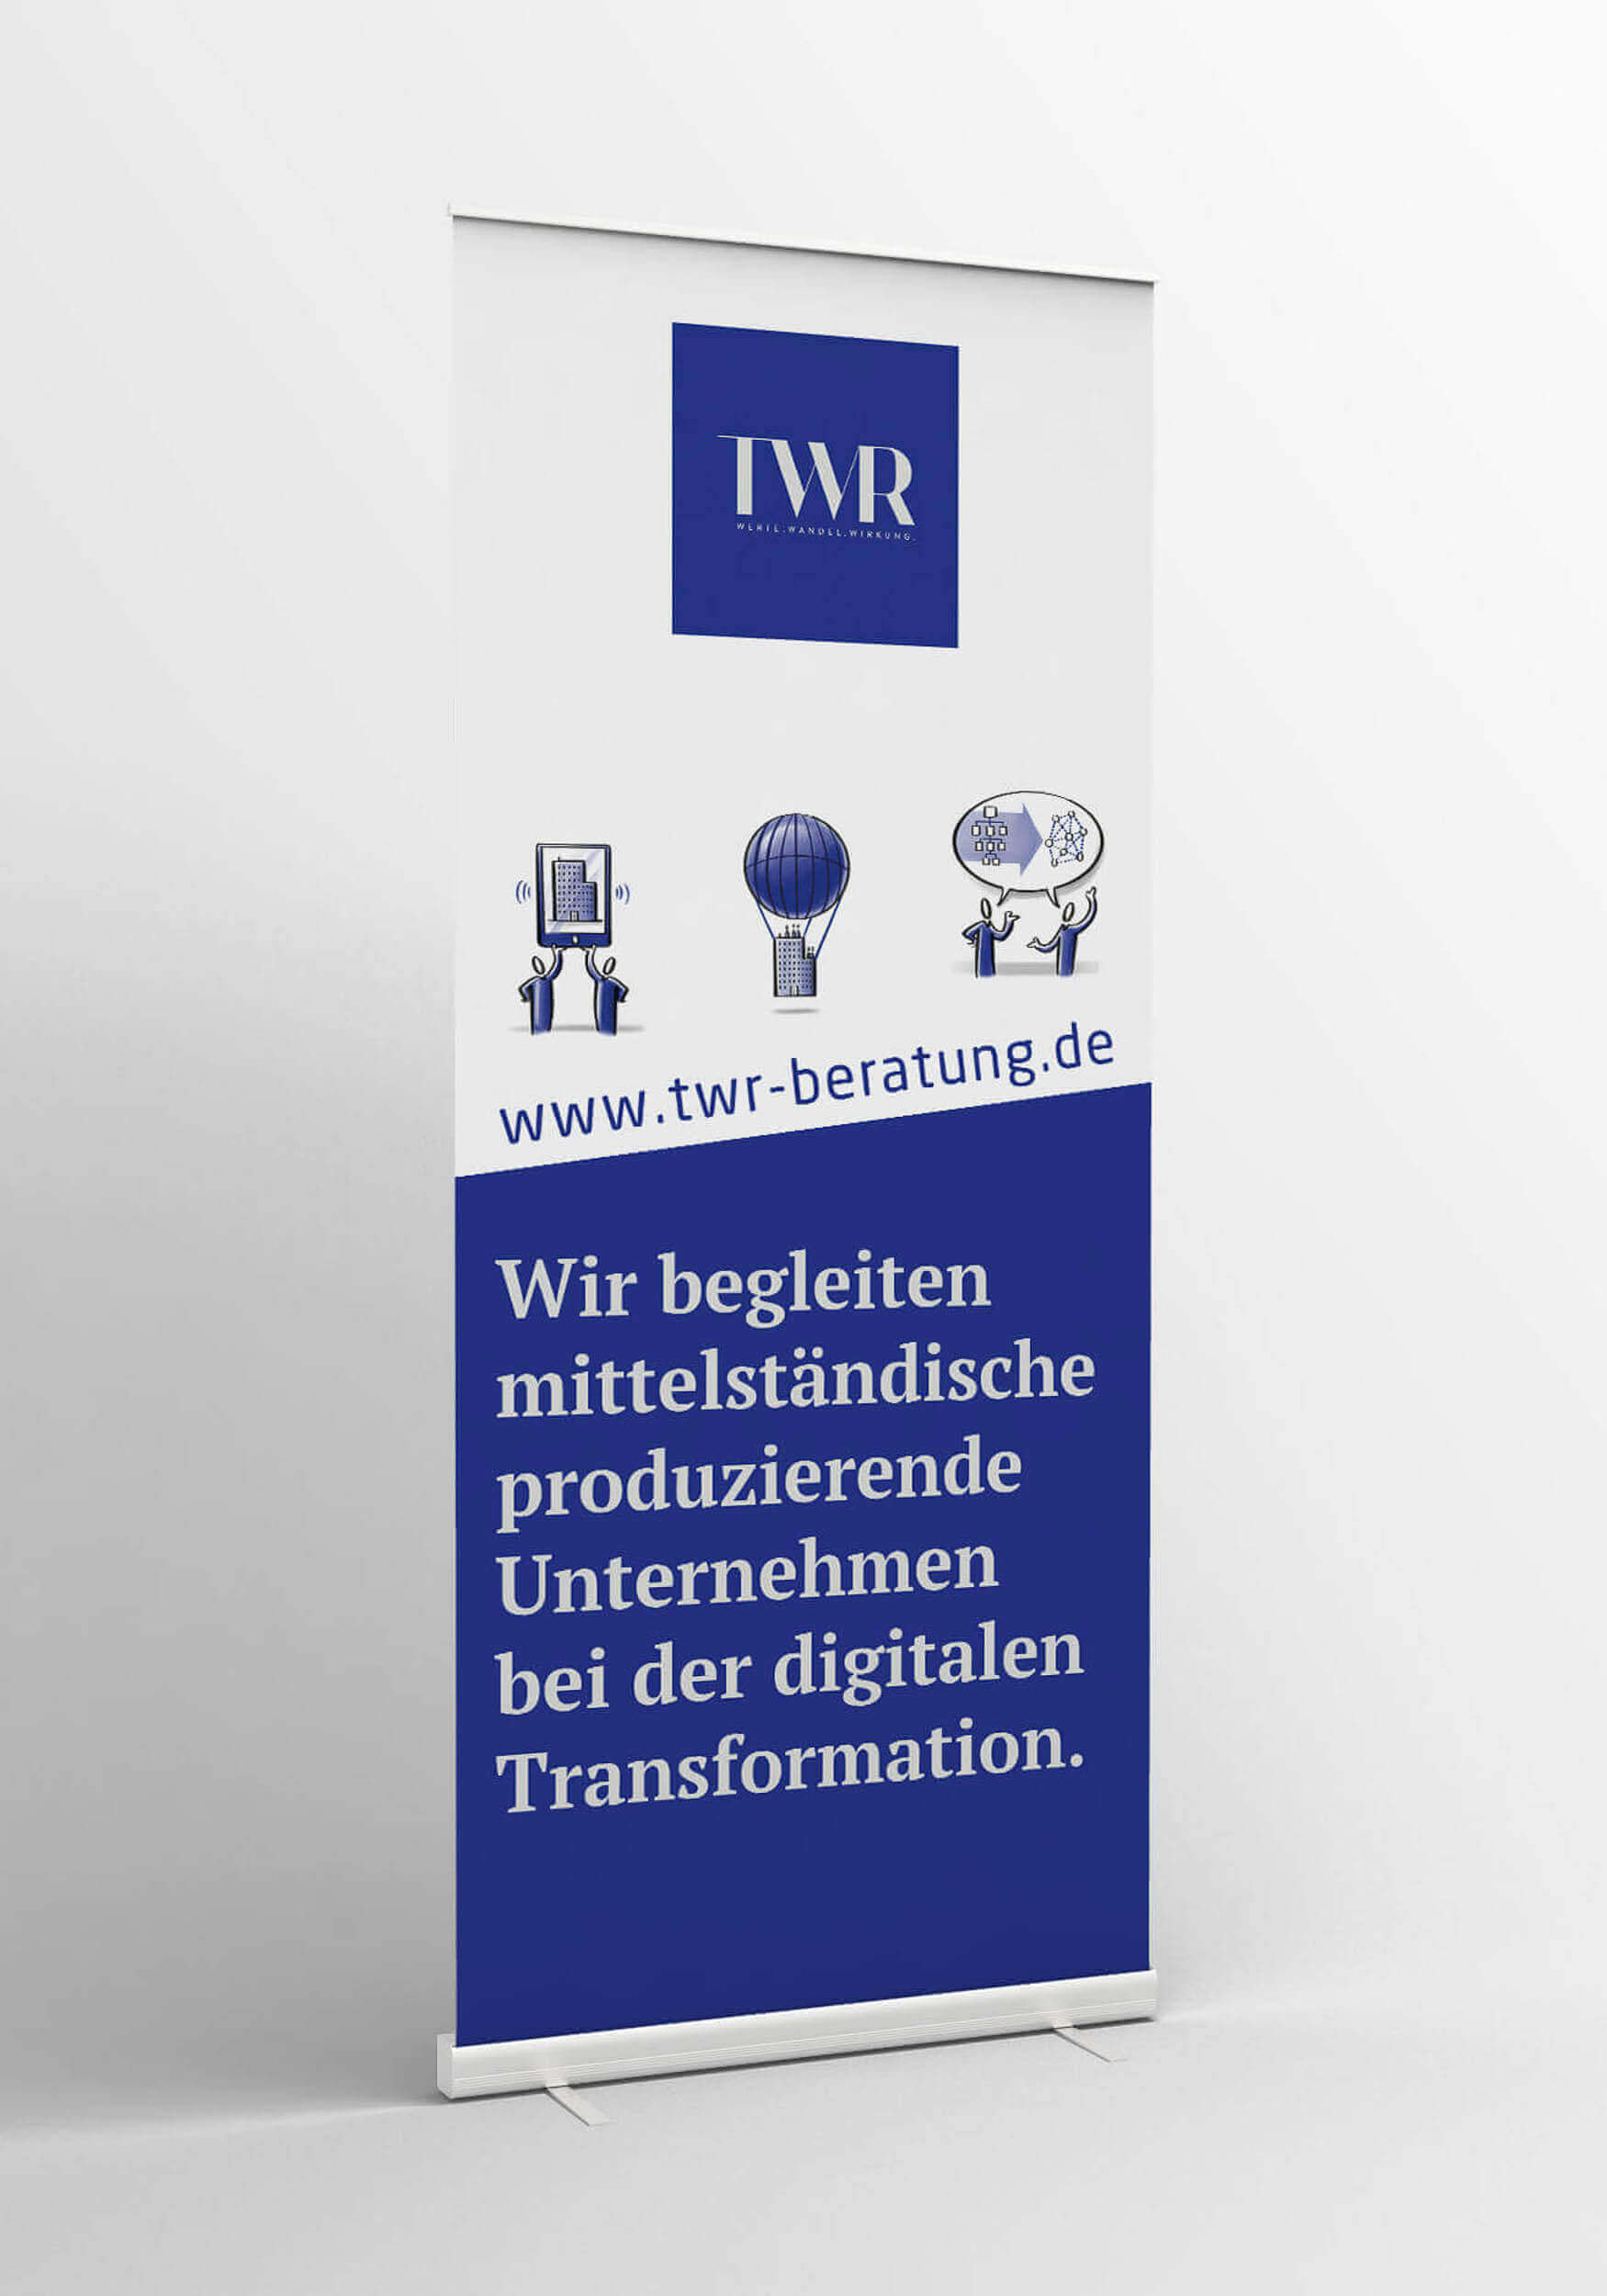 Ein Roll-Up Display mit dem Logo der twr GmbH